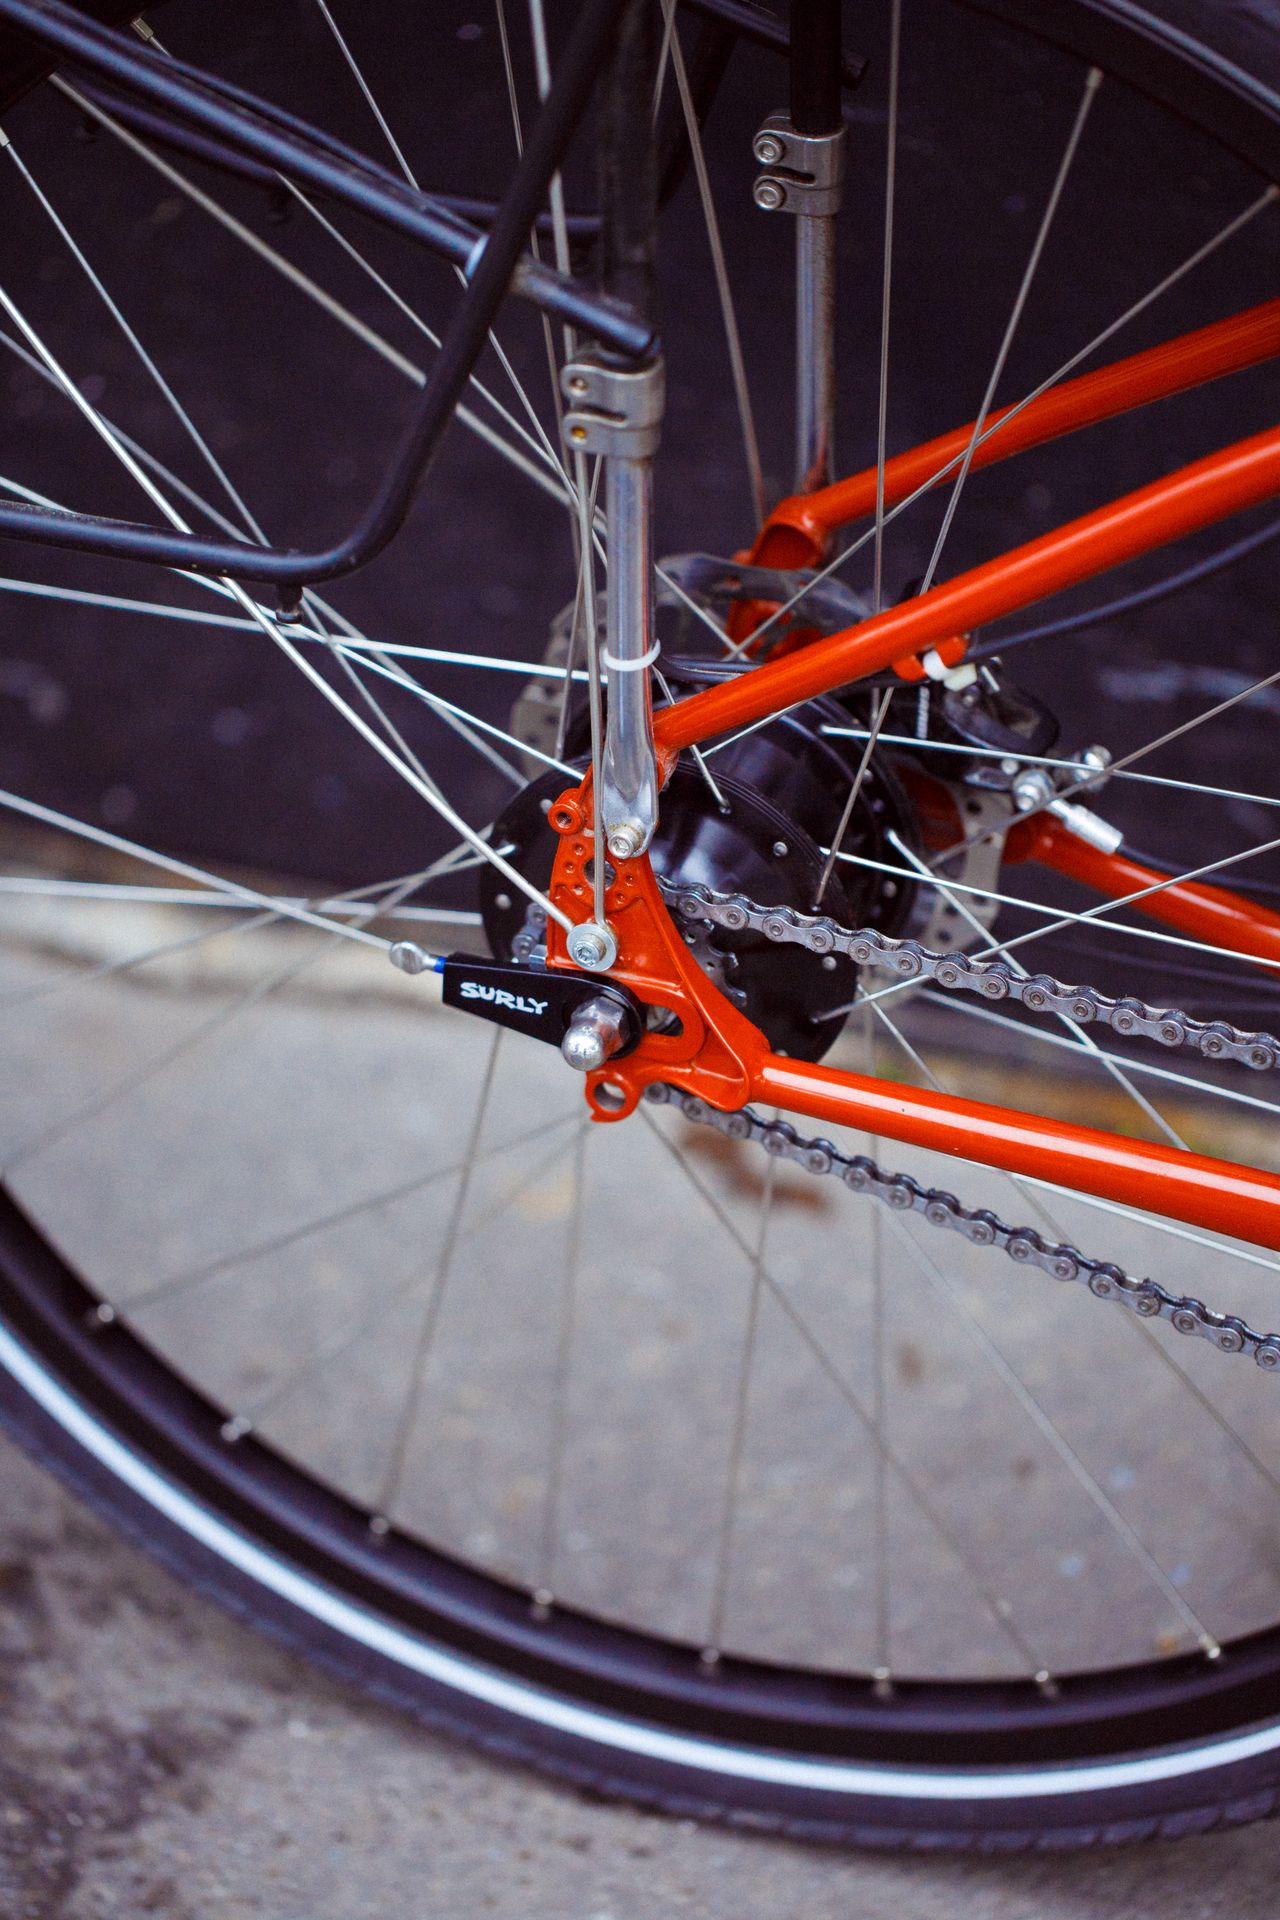 Magasin de cycles et atelier de réparation et montage vélo à la carte à Paris 13eme spécialisé dans le gravel et le voyage. rayonnage moyeu Rohloff à l'atelier spécialisé dans la randonnée et le montage velo